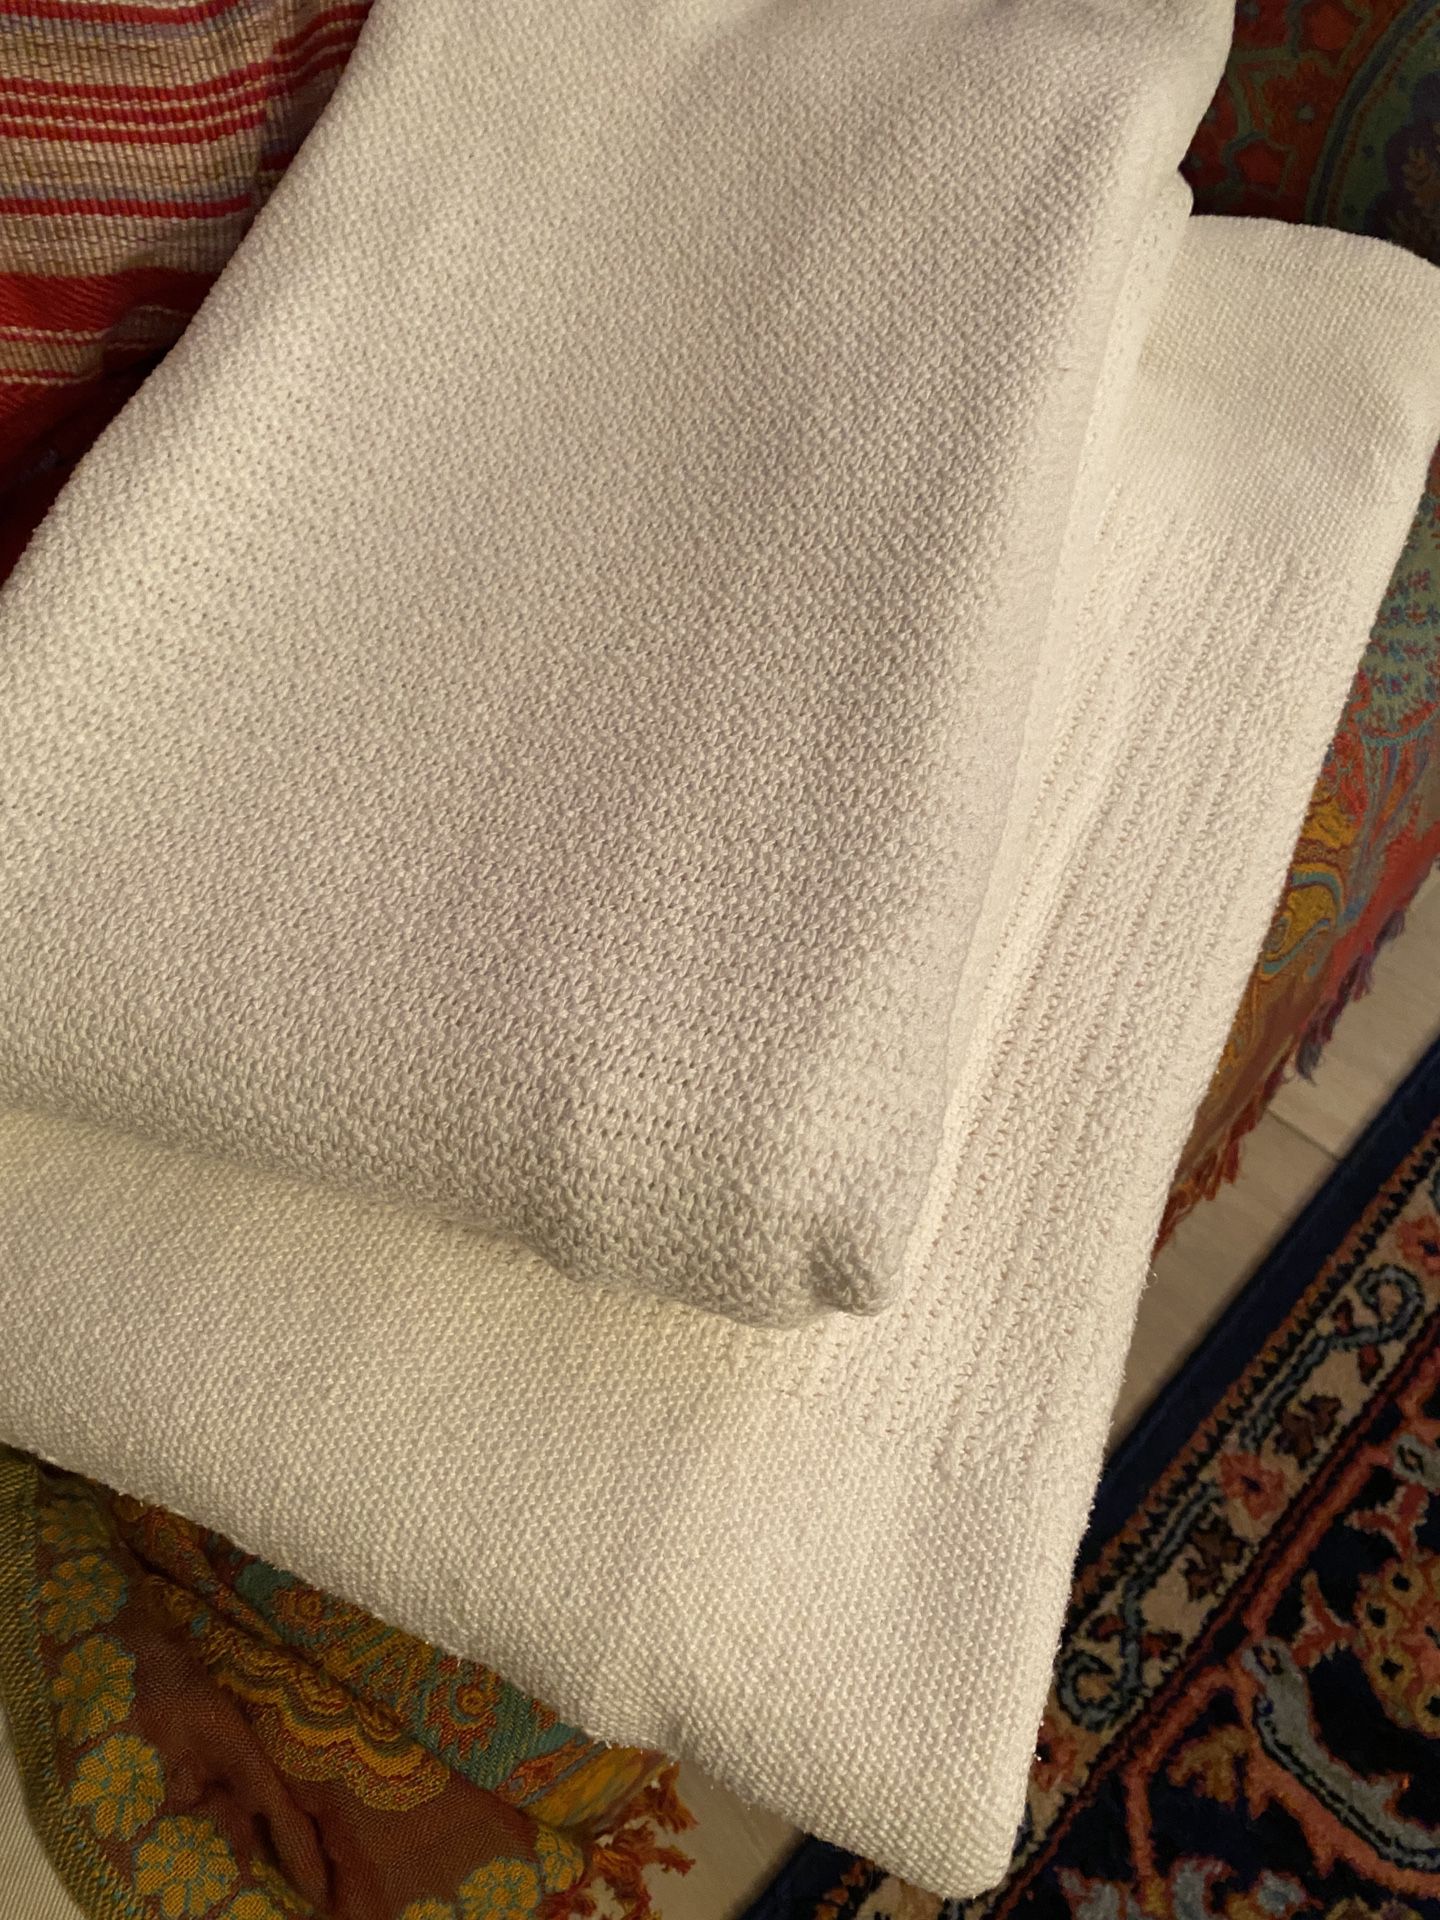 Summer-weight White Cotton Blankets $7 Each